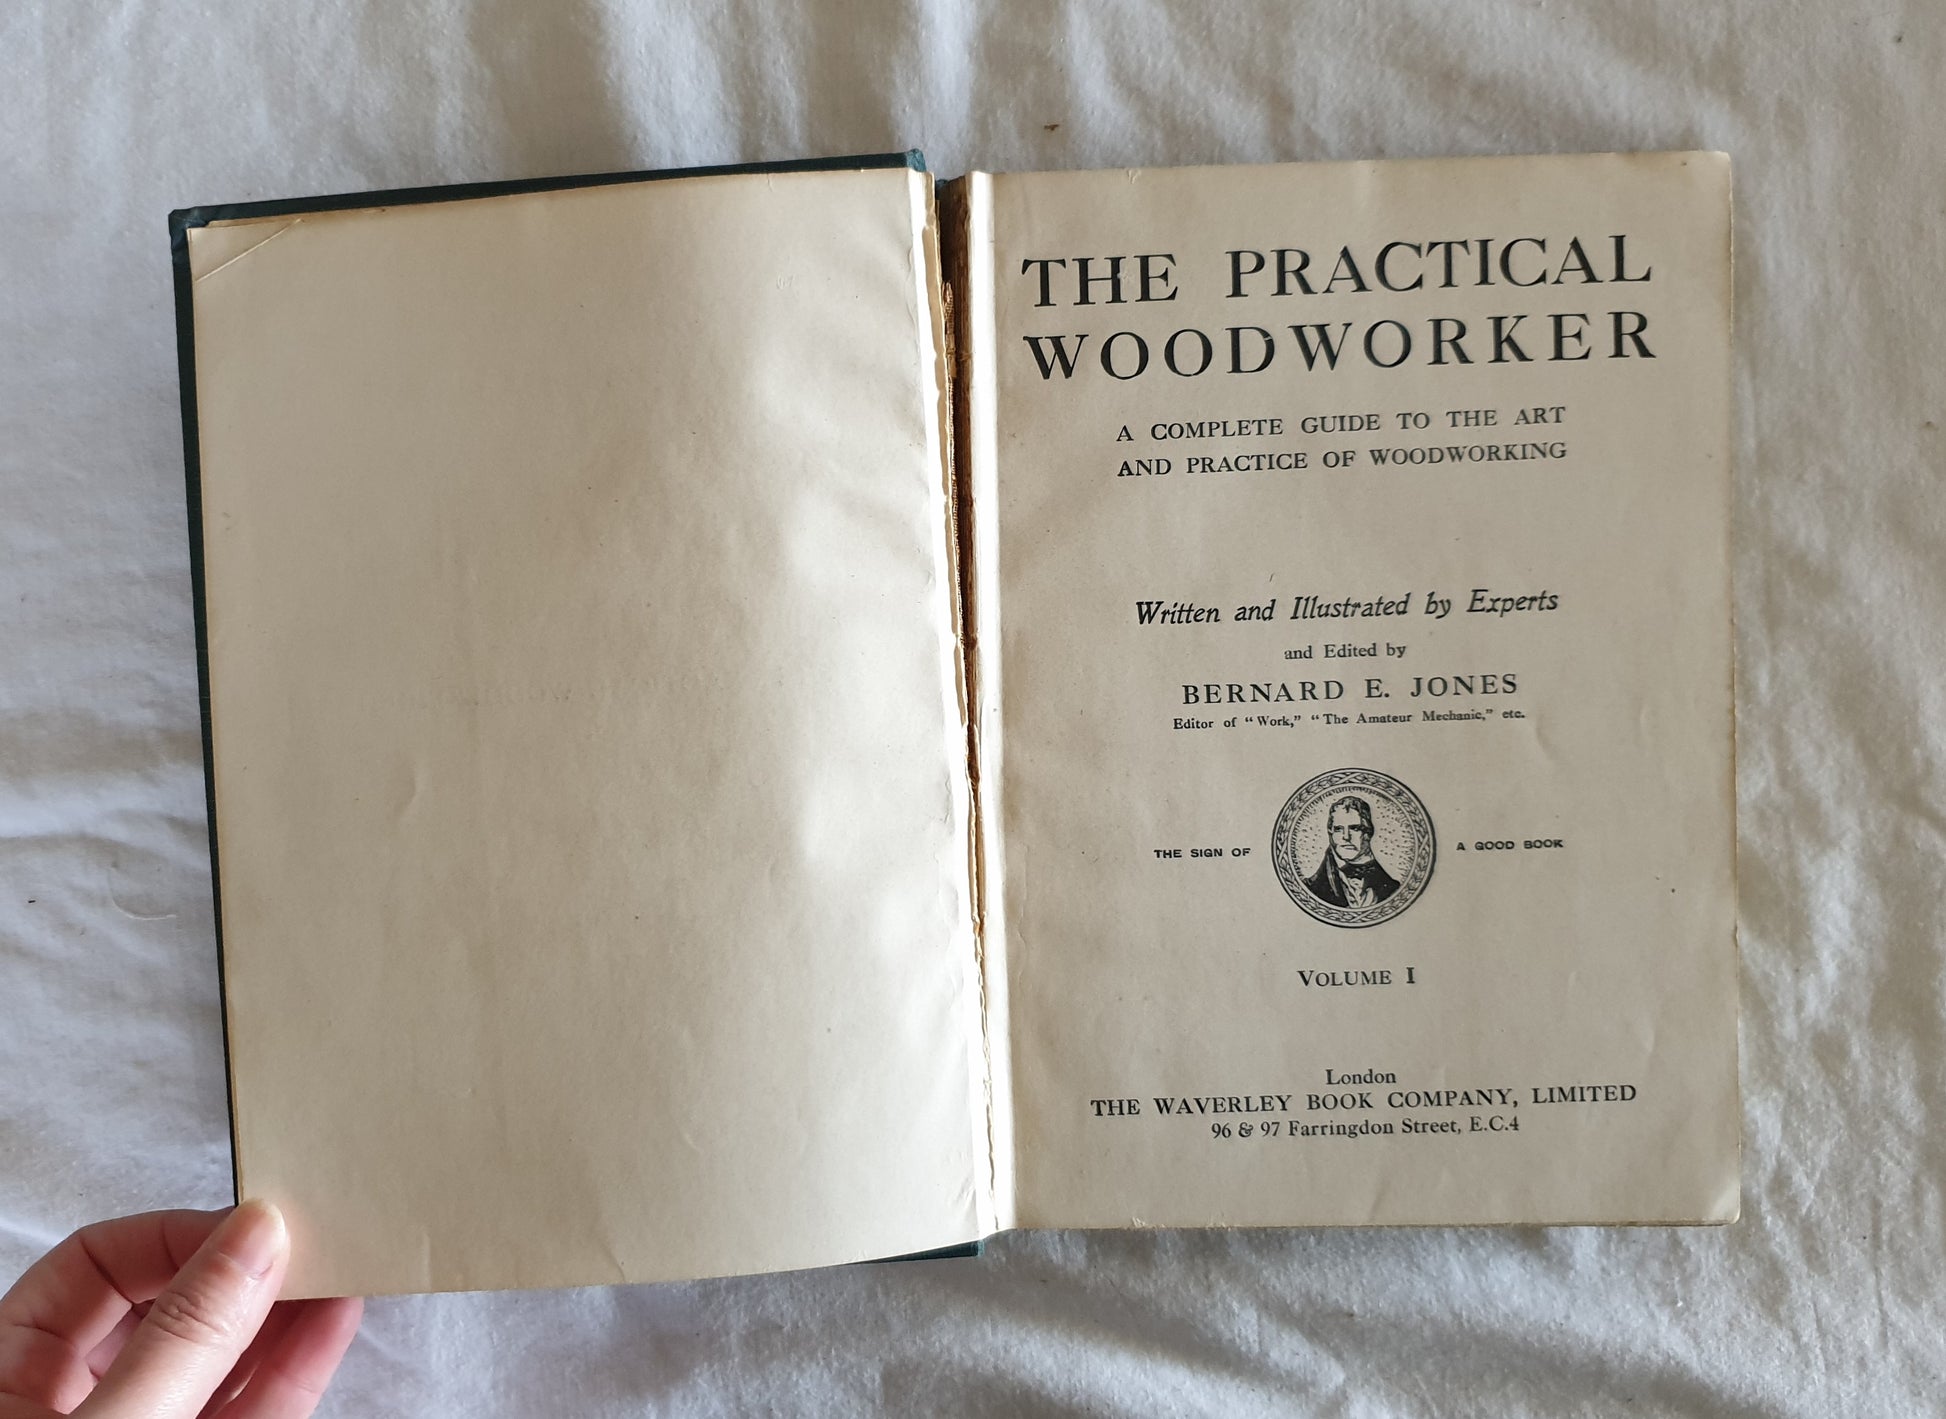 The Practical Woodworker by Bernard E. Jones - Volume 1